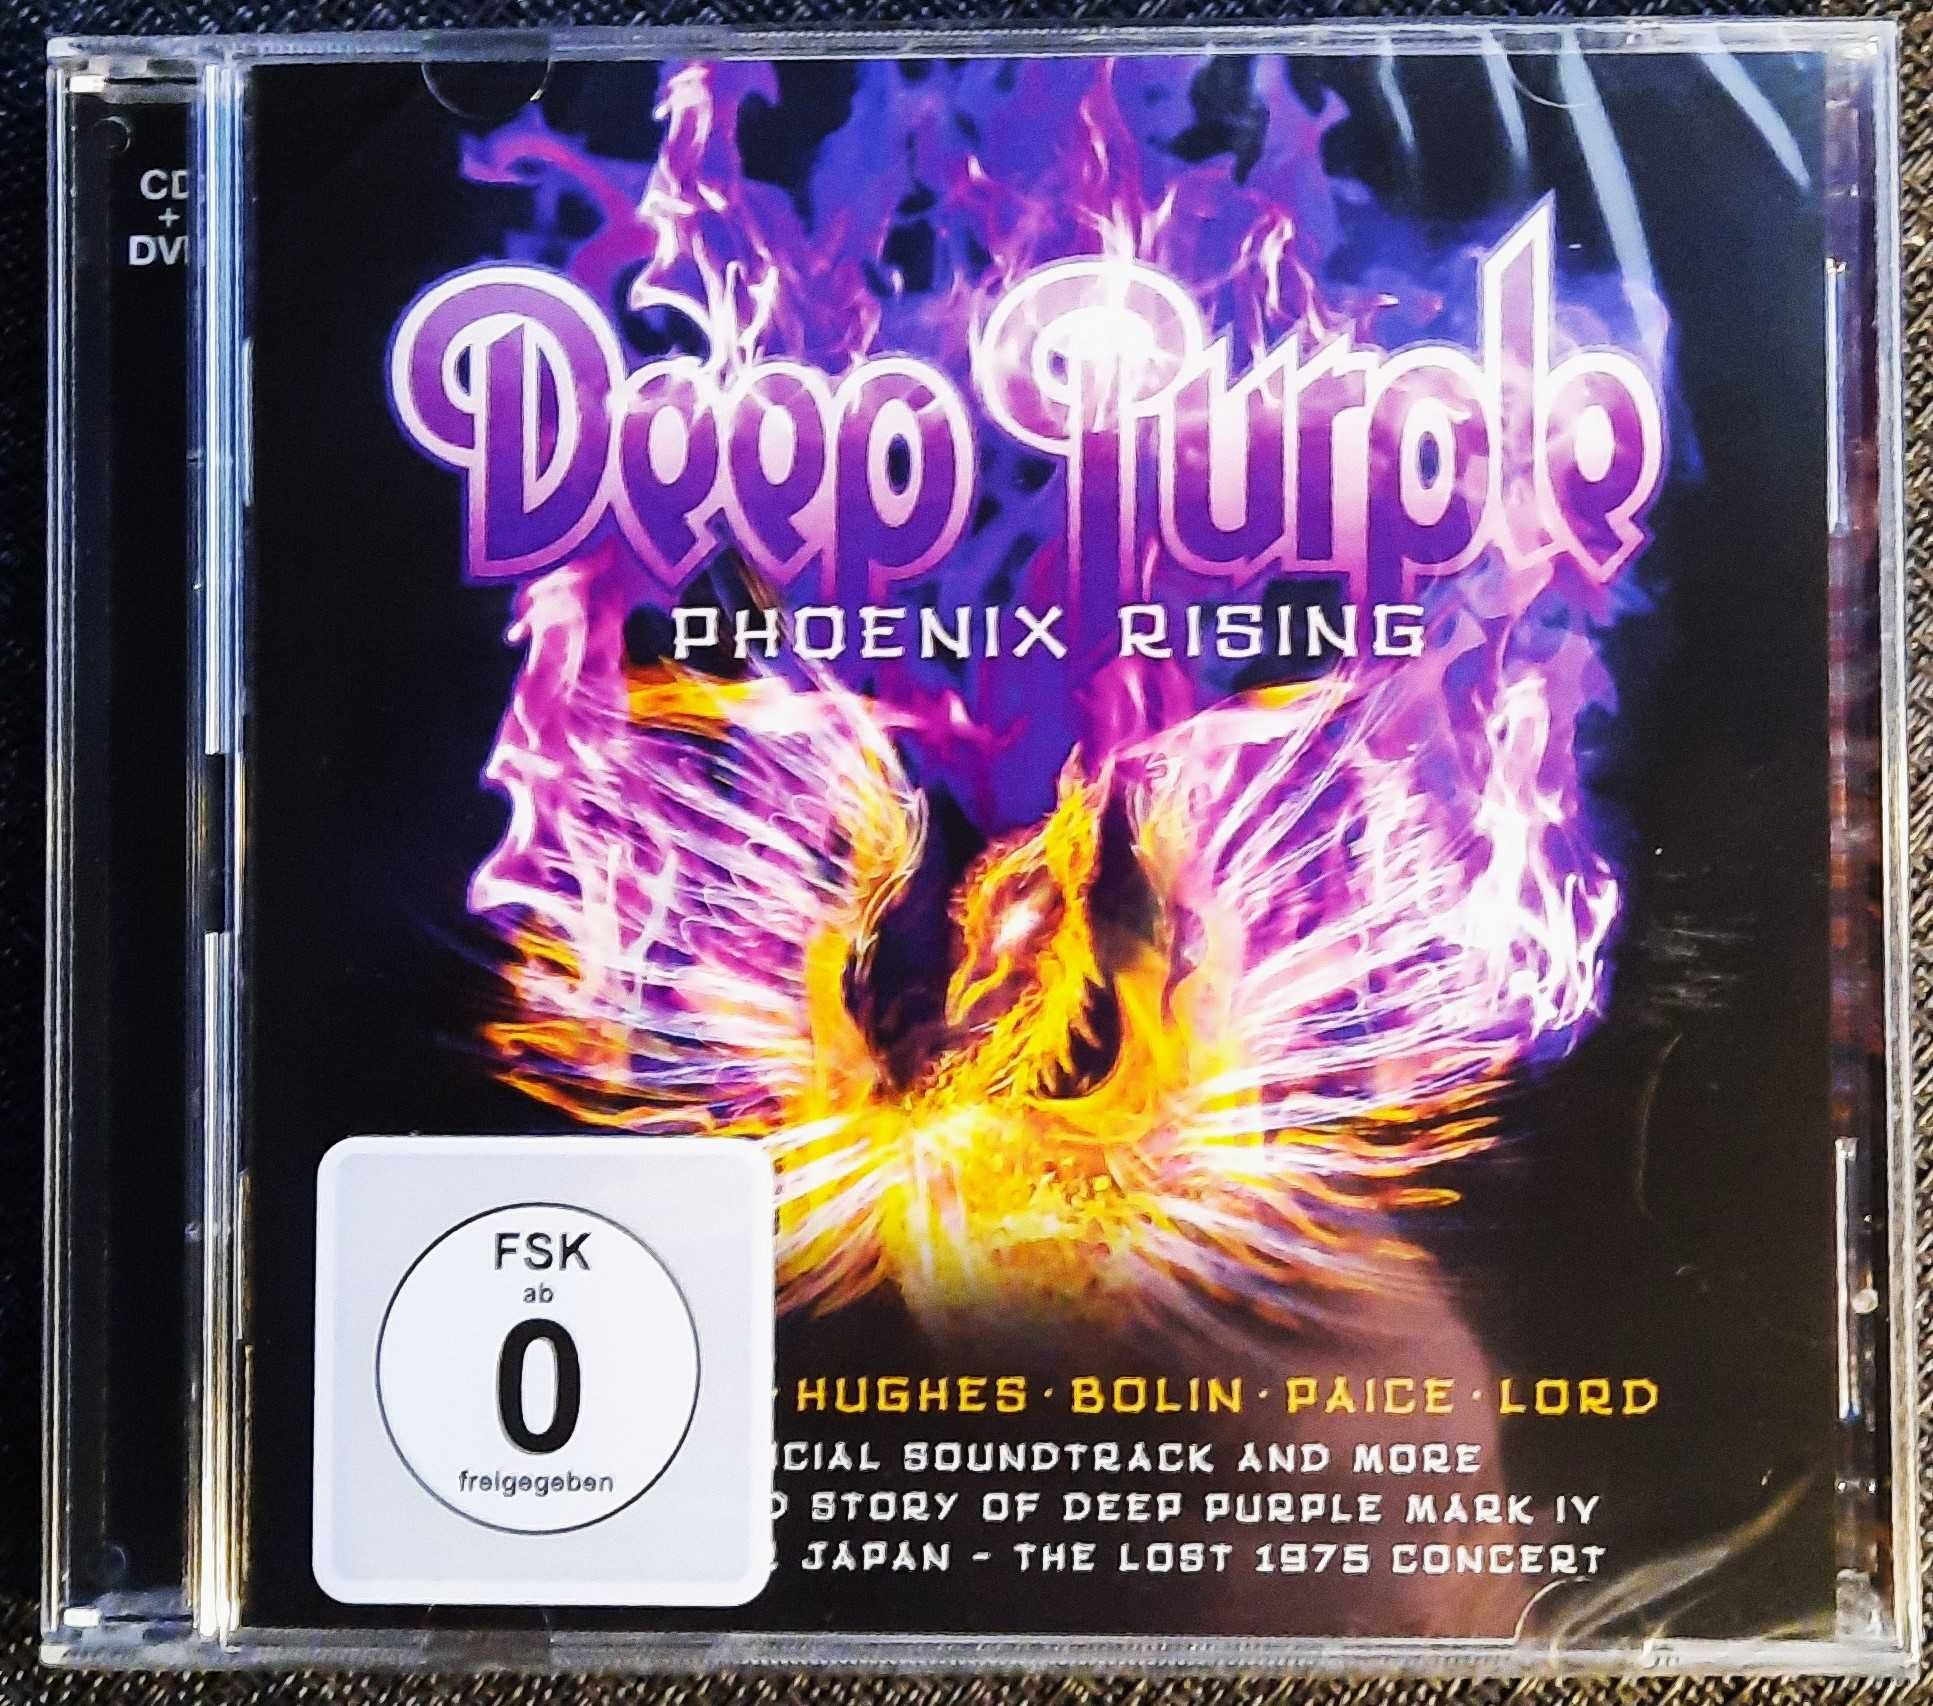 Polecam Album wspaniały Zestaw CD+DVD  DEEP  PURPLE  - Phoenix Rising